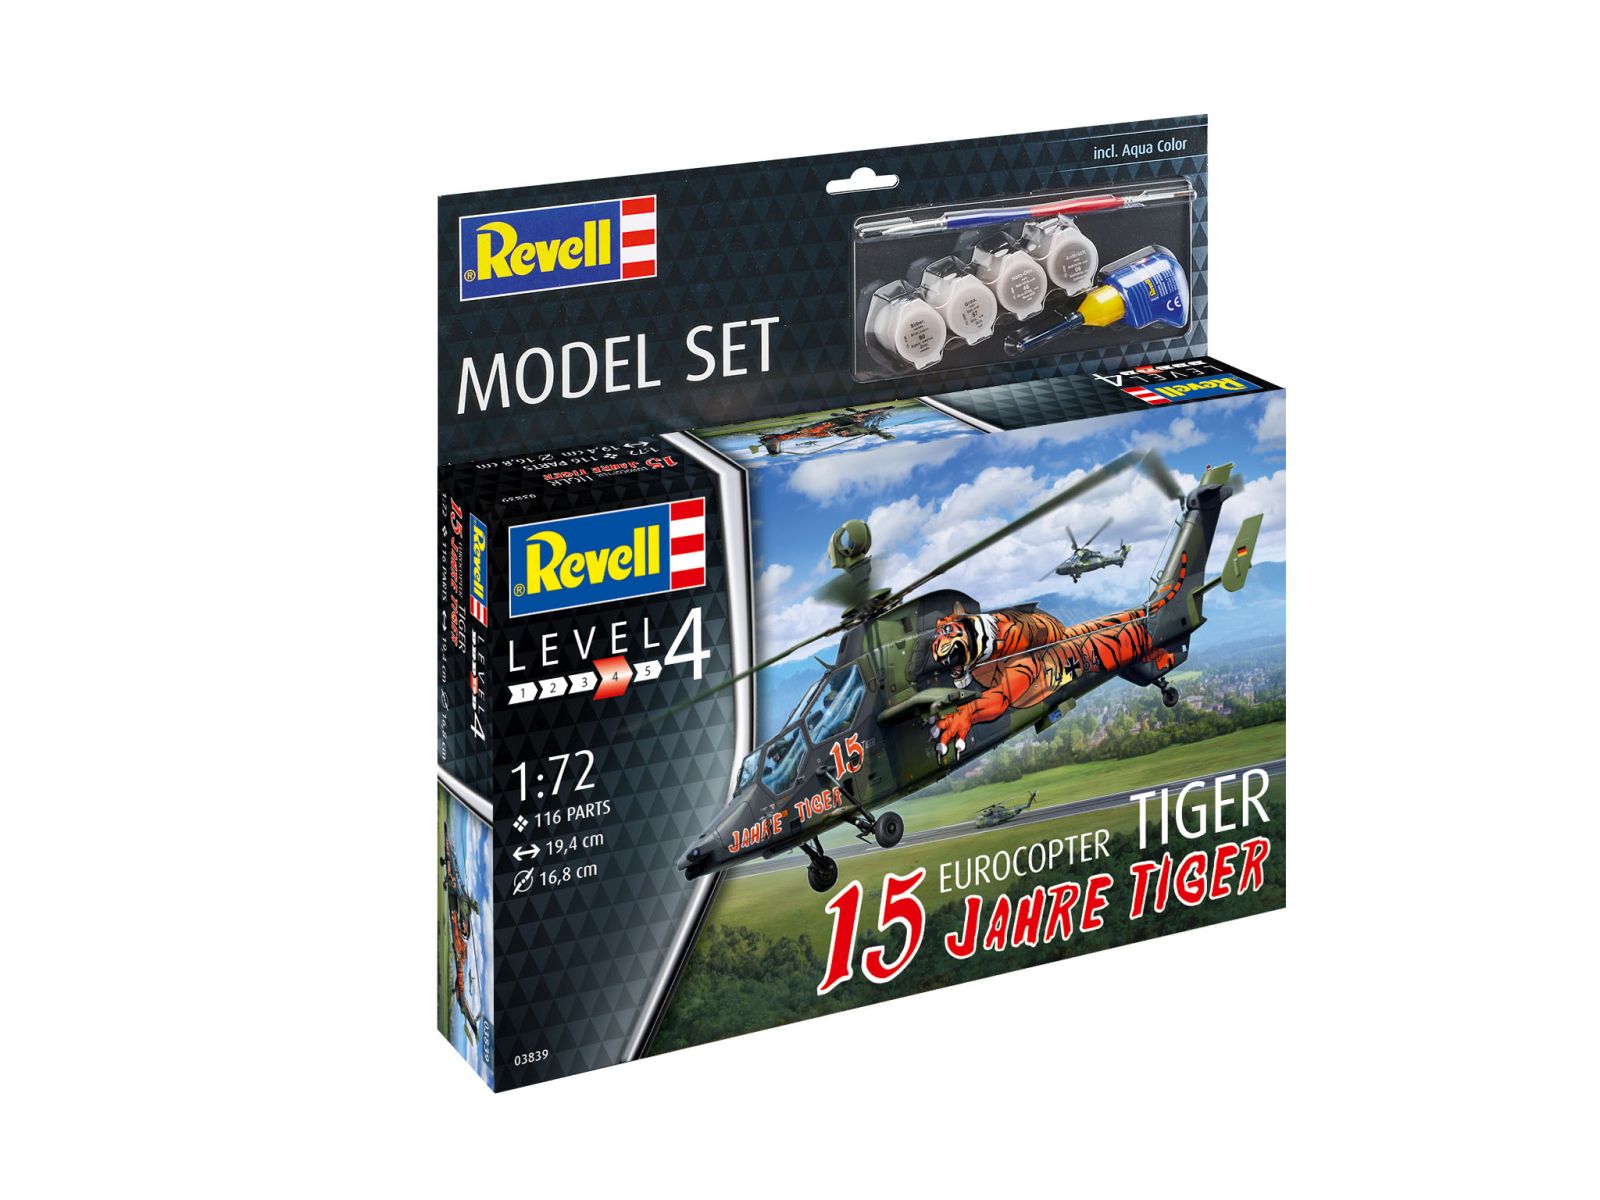 Revell 63839 - Model Set Eurocopter Tiger "15 Jahre Tiger"